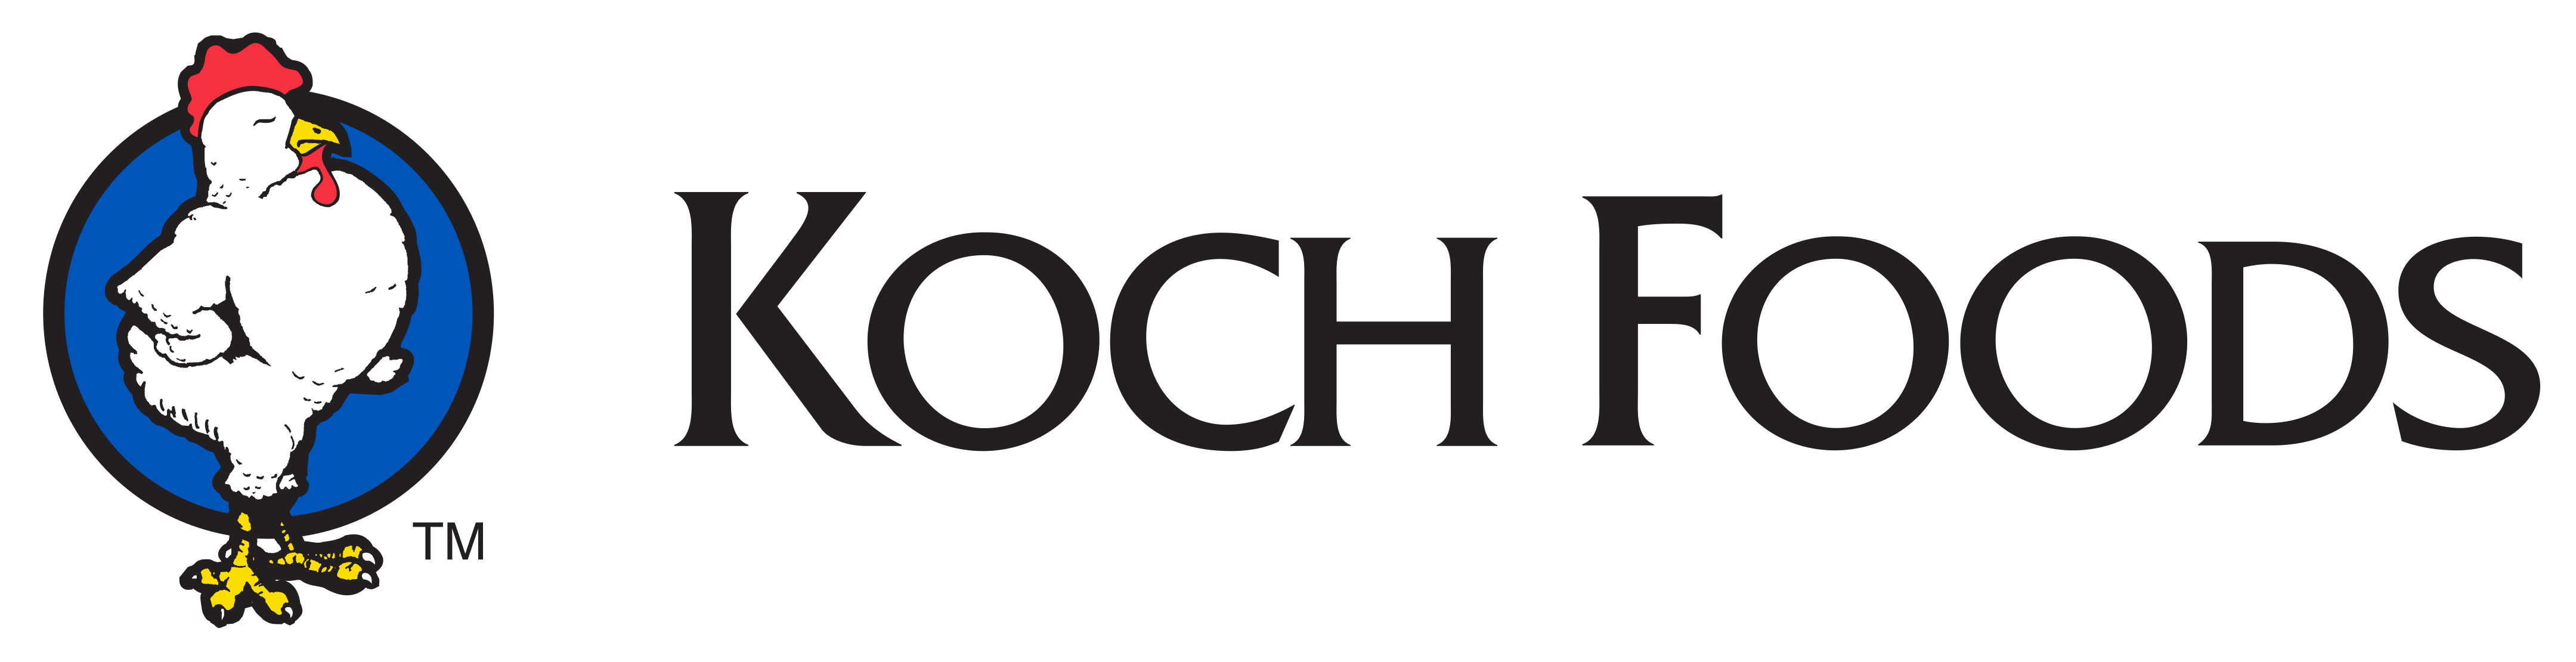 koch logo